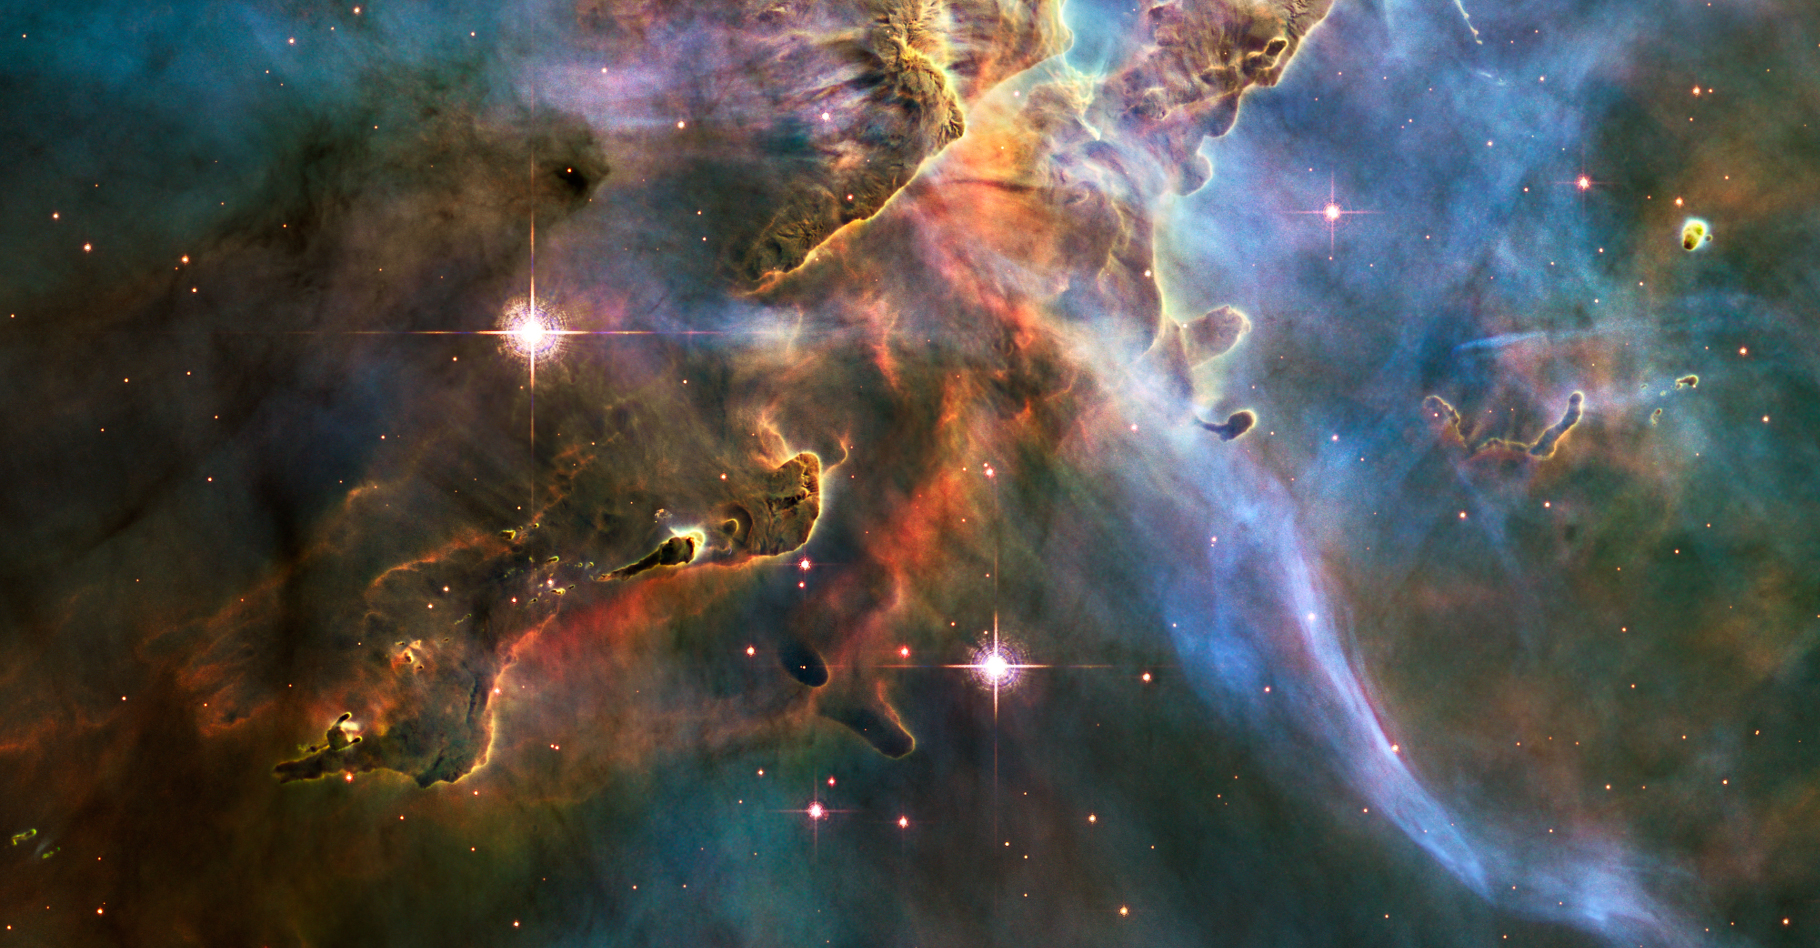 De brillantes étoiles dans la nébuleuse de la Carène. Cette dernière se trouve à une distance estimée entre 6.500 et 10.000 années-lumière, dans la constellation du même nom. ©&nbsp;Hubble Space Telescope